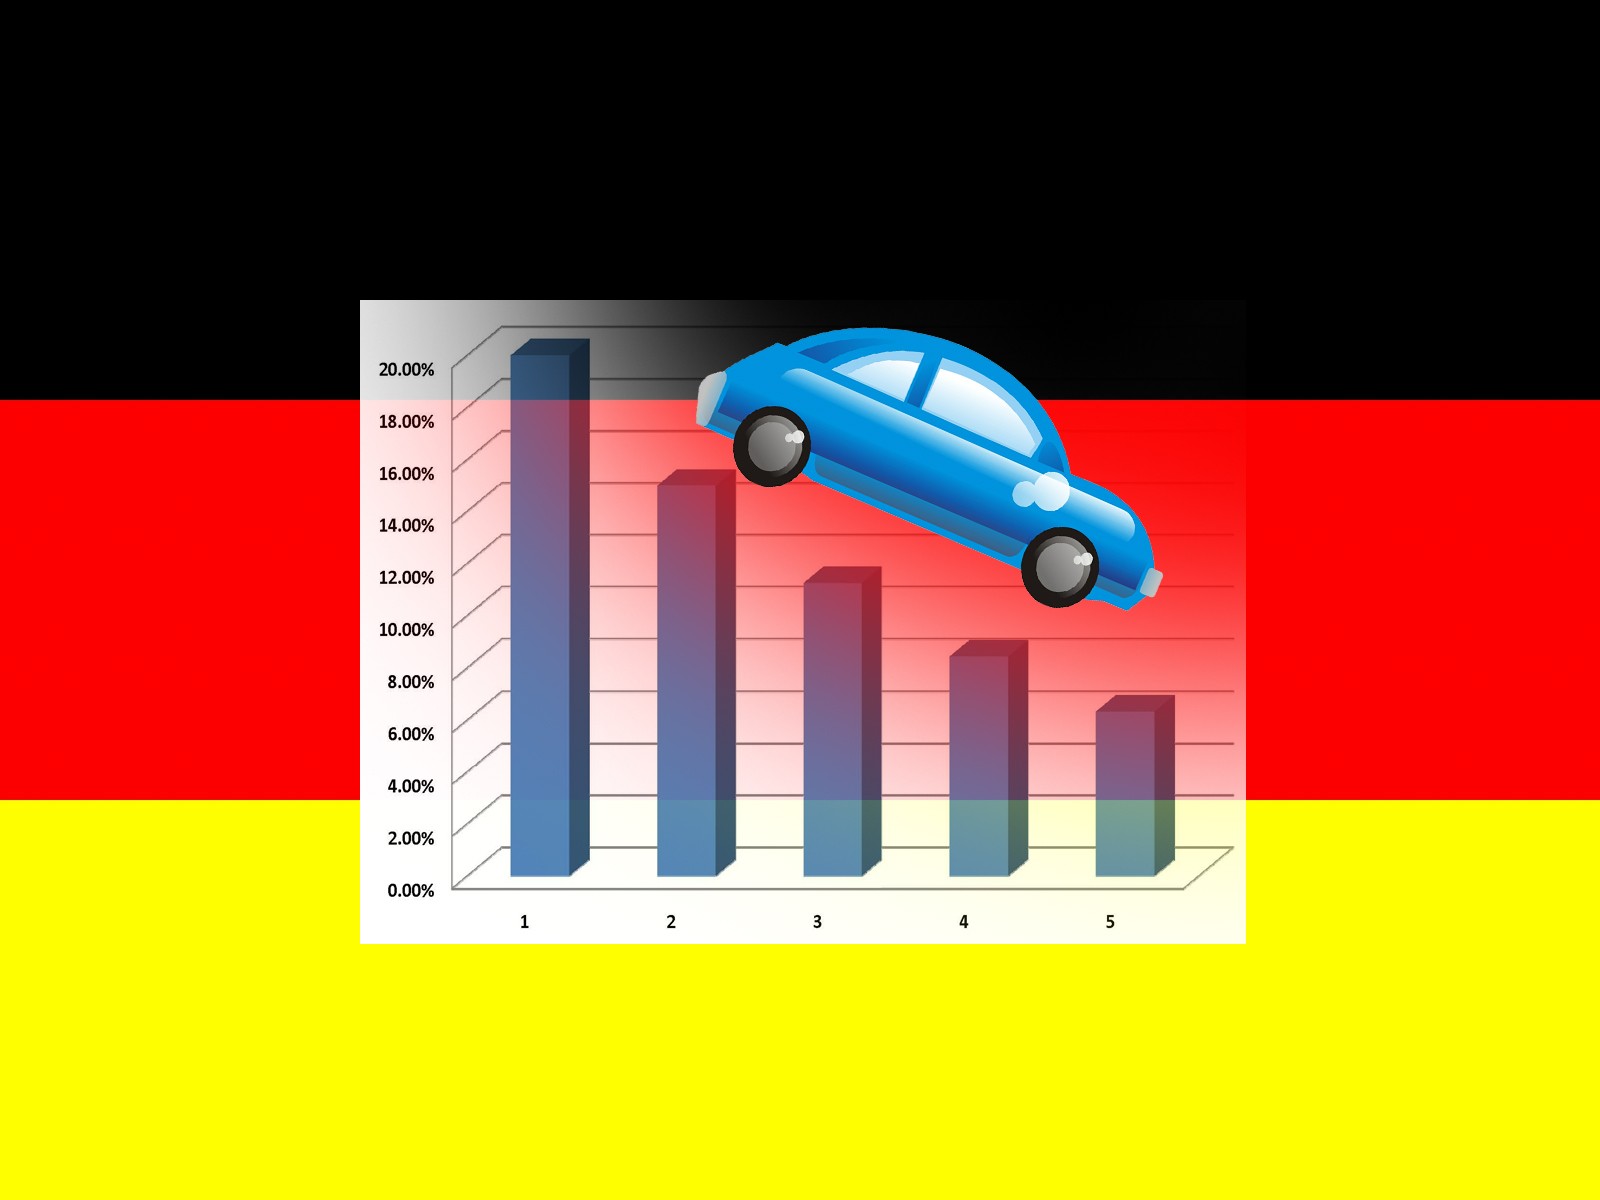 Πως να δηλώσετε ελληνικό αμάξι στη Γερμανία - Ασφάλιση αυτοκινήτου